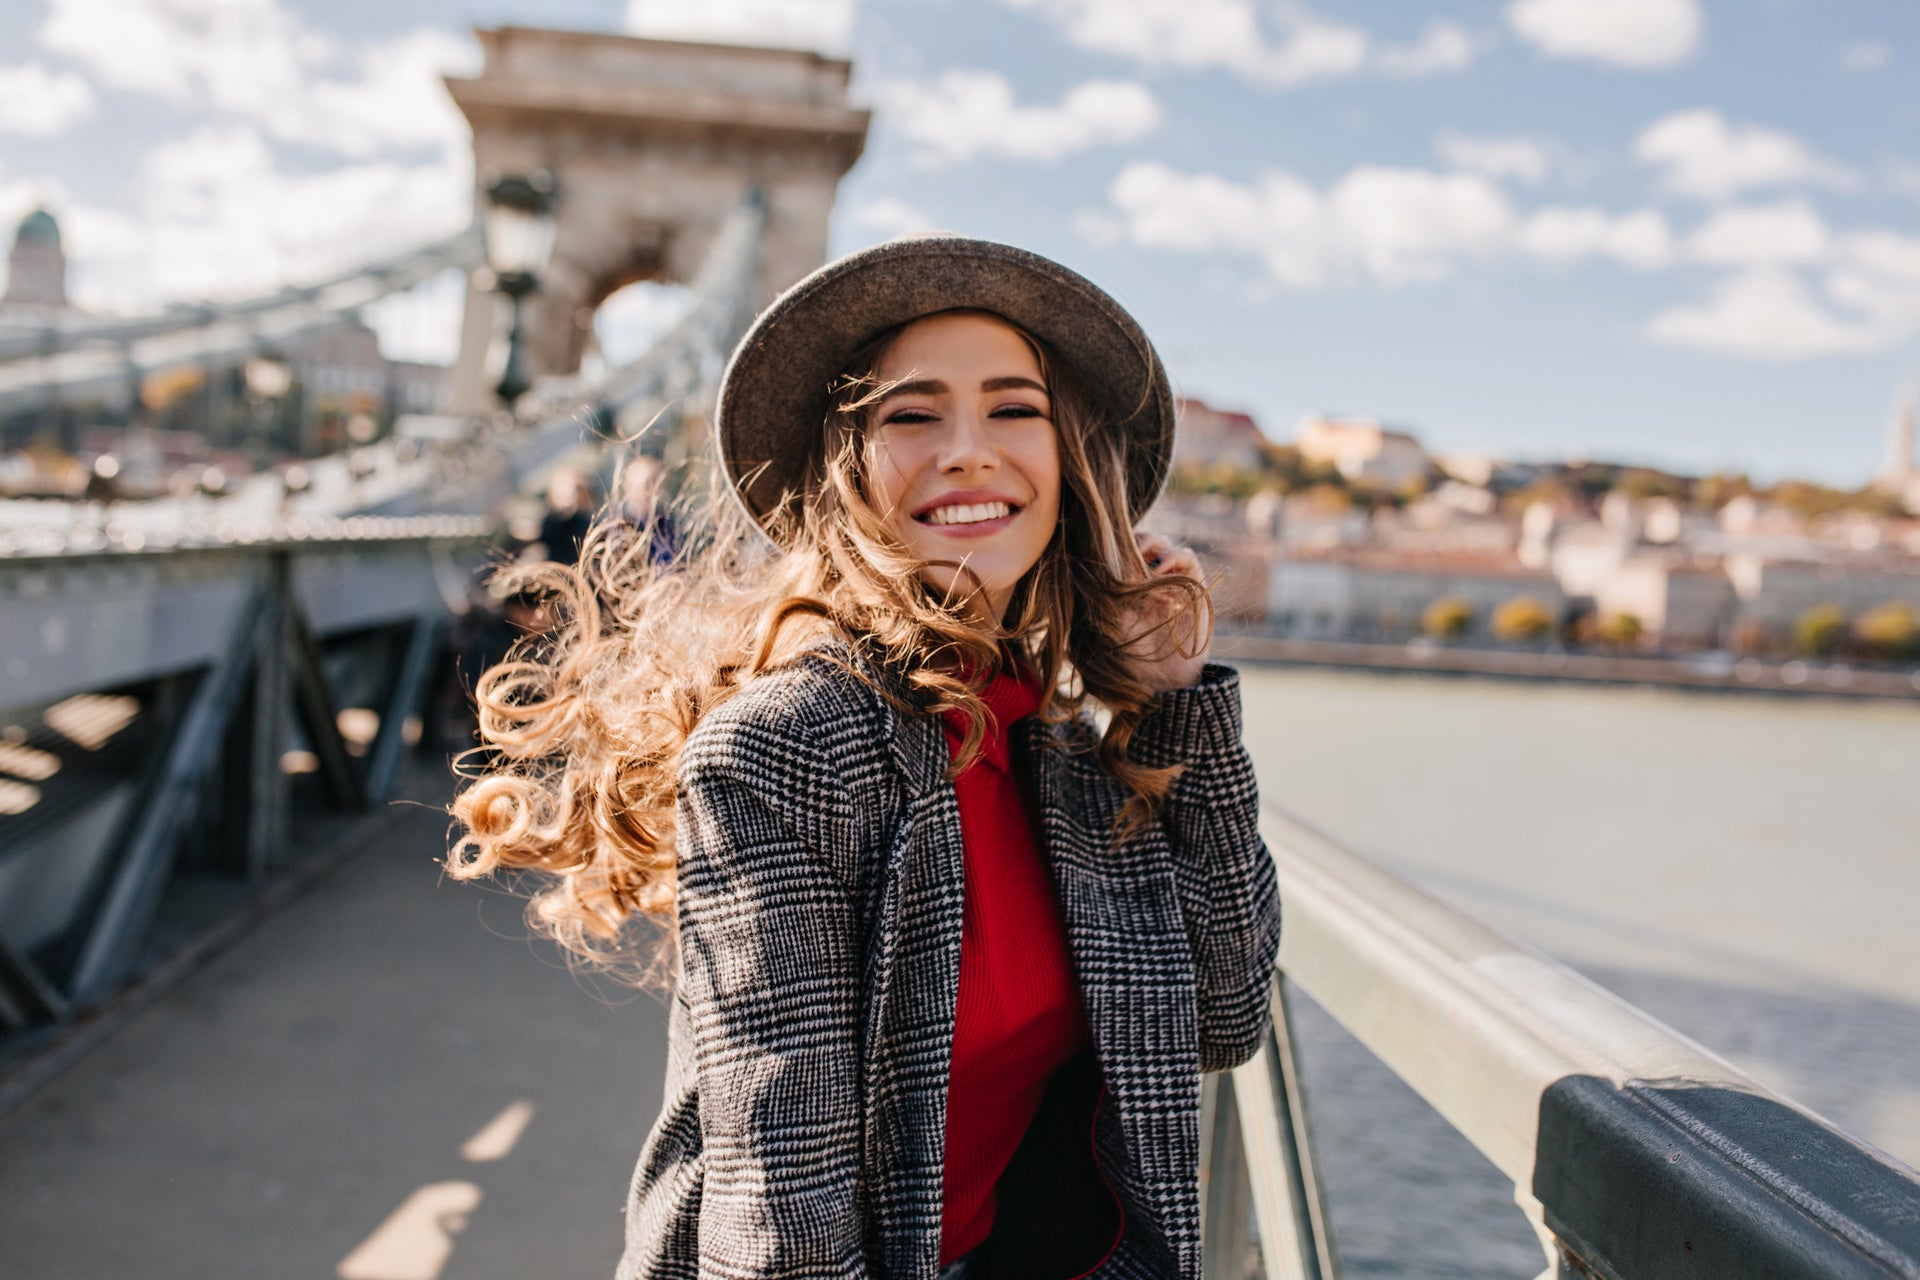 Ein lächelndes Mädchen mit Hut und auf einer Brücke stehend